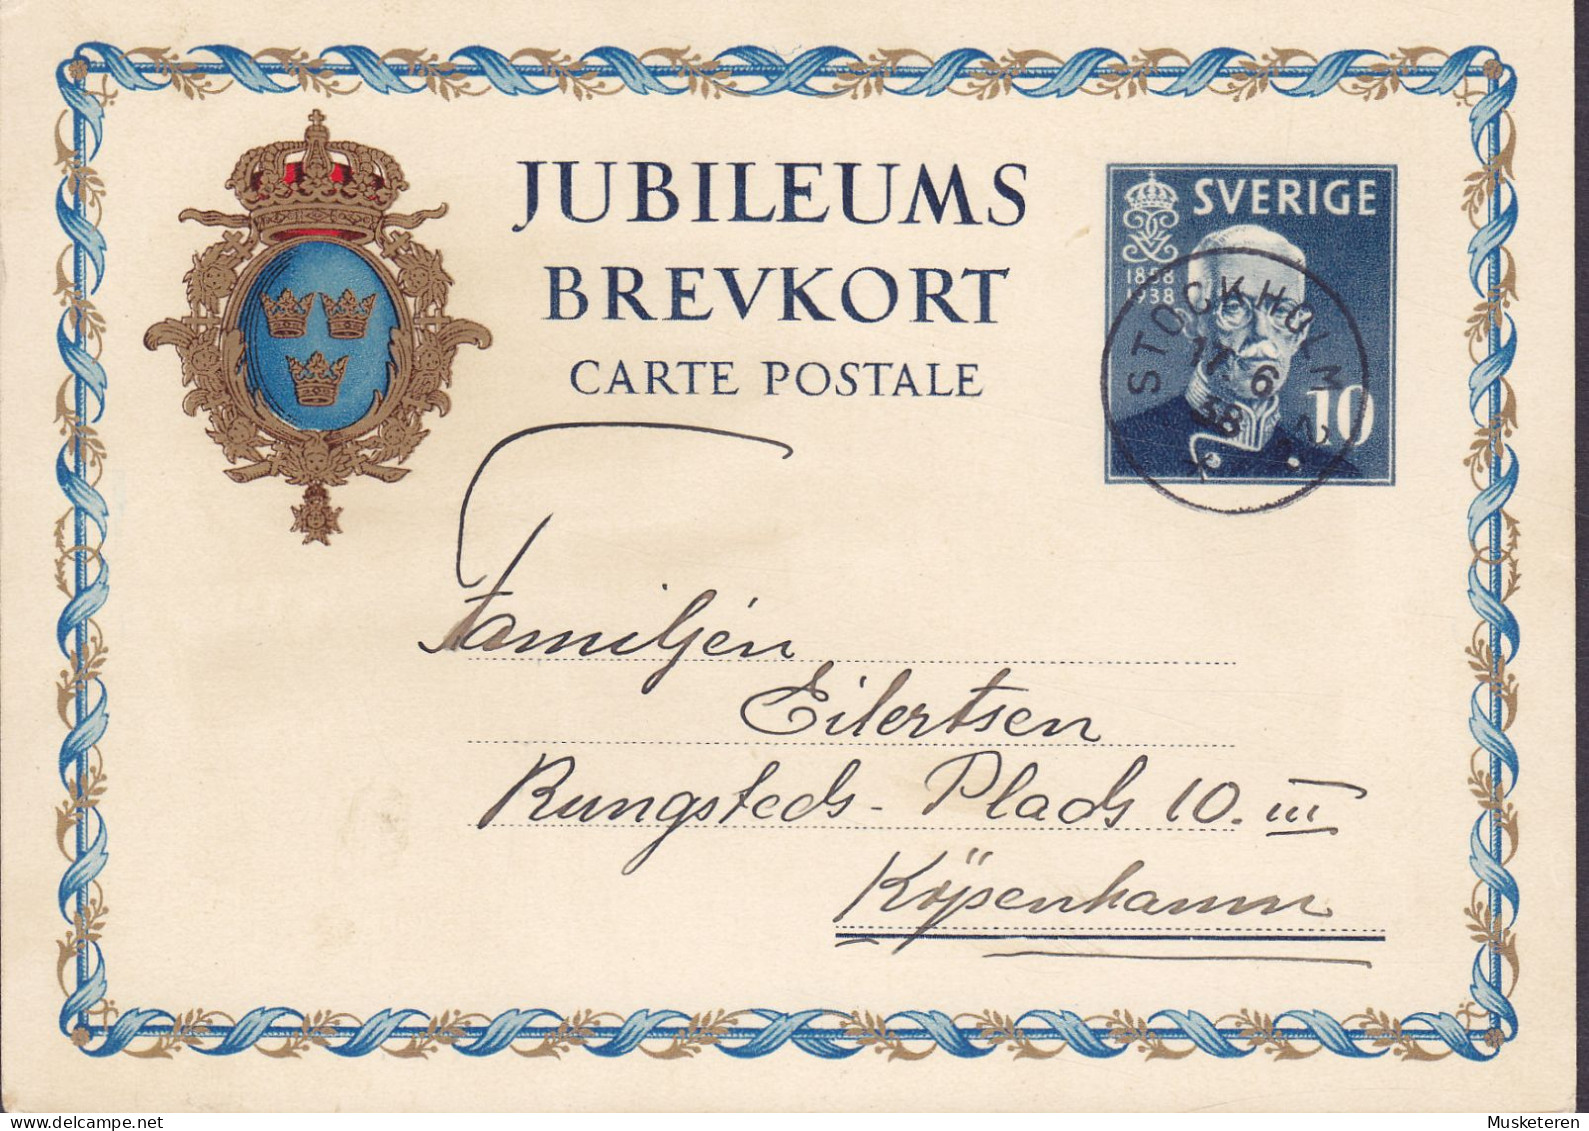 Sweden Postal Stationery Ganzsache Entier 10 Ø Jubileums Brevkort 1858-1938 STOCKHOLM 1938 KØBENHAVN Denmark - Postwaardestukken